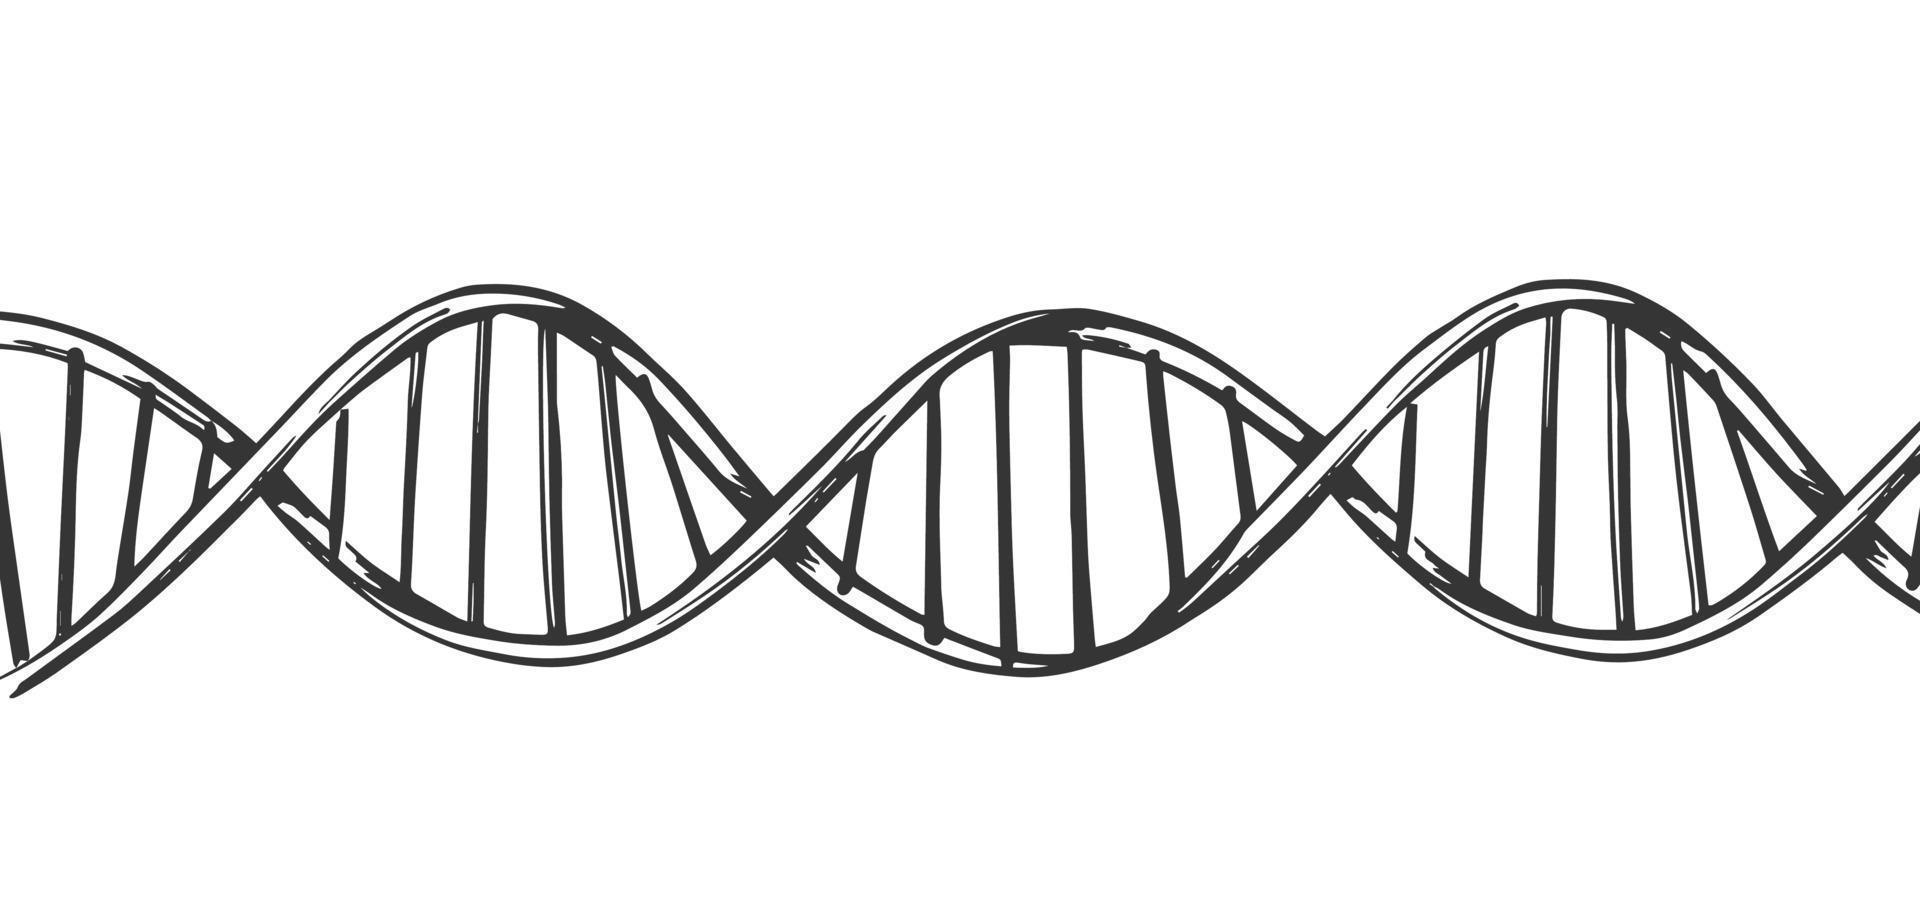 fundo horizontal da estrutura da molécula de DNA. pesquisa genética e química. esboço de ilustração desenhado à mão. vetor isolado.